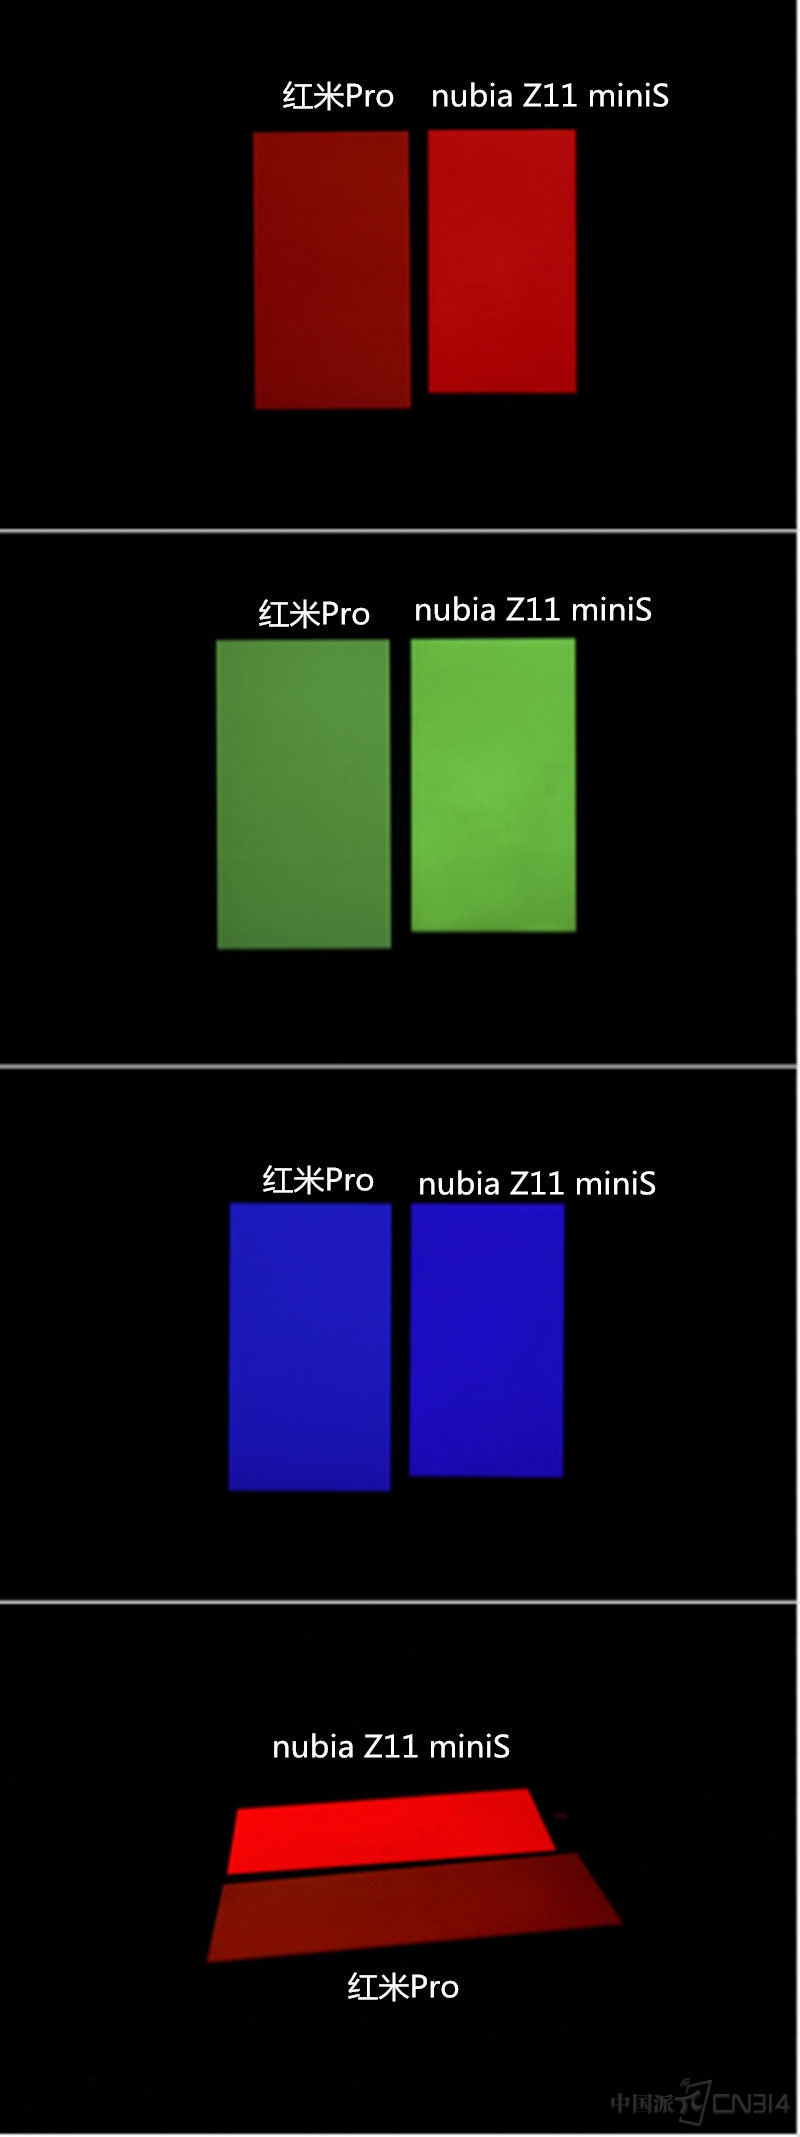 努比亚Z11 miniS迎战红米Pro 谁更胜一筹